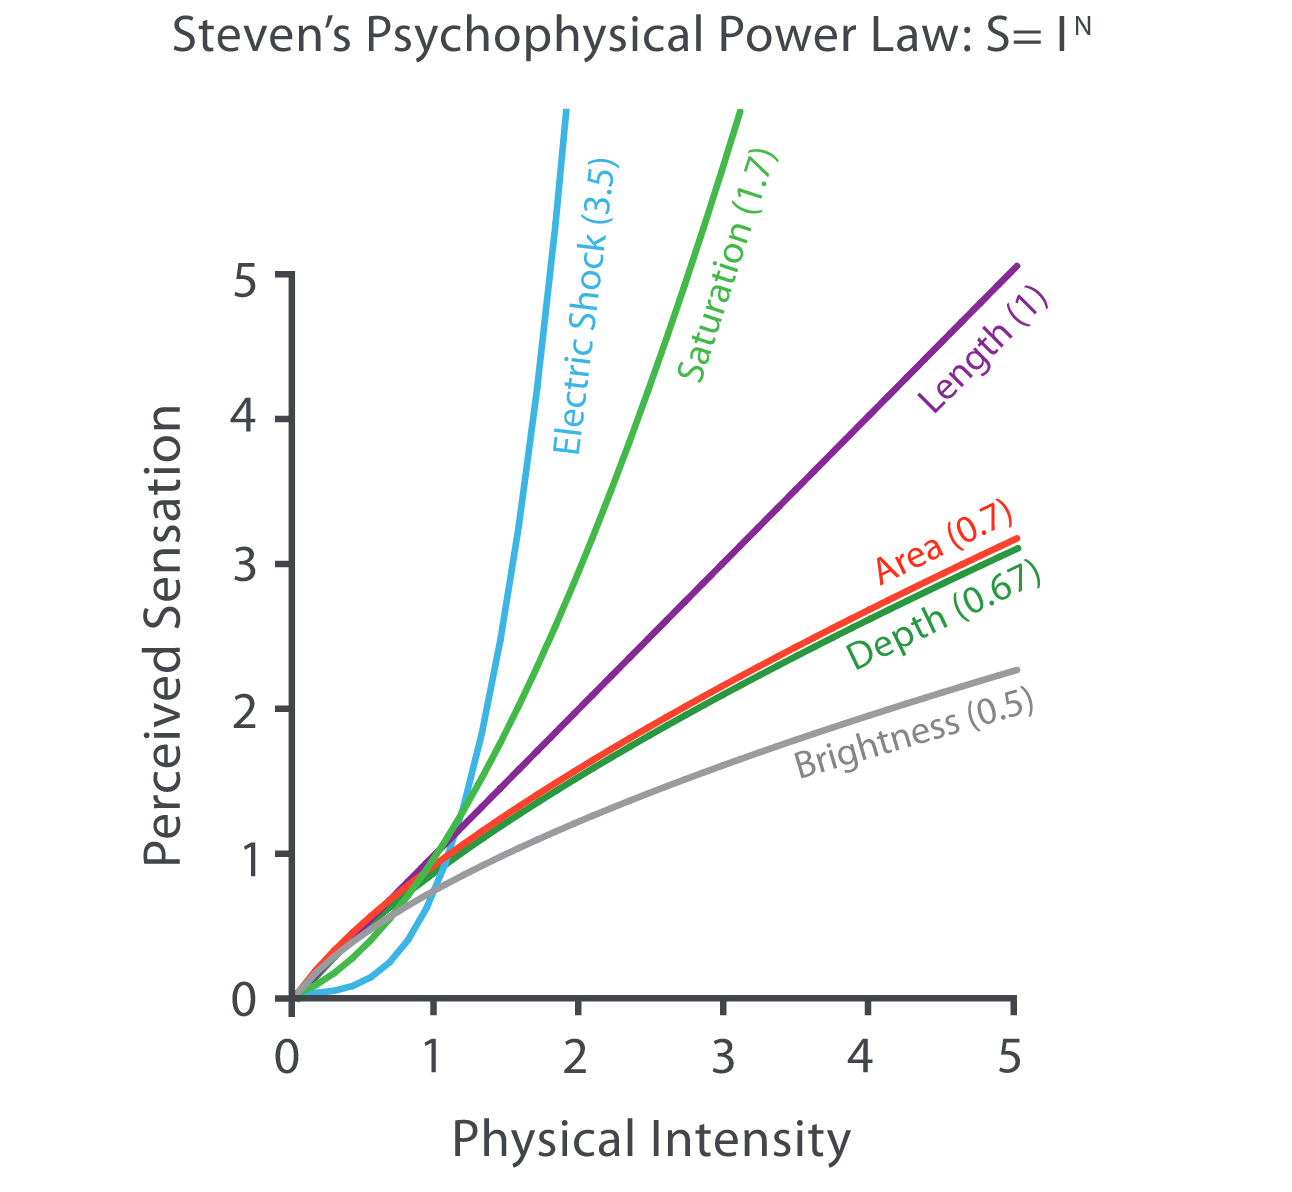 Ley de Stevens sobre percepción de estímulos. Fuente: Visualization Analysis & Design.